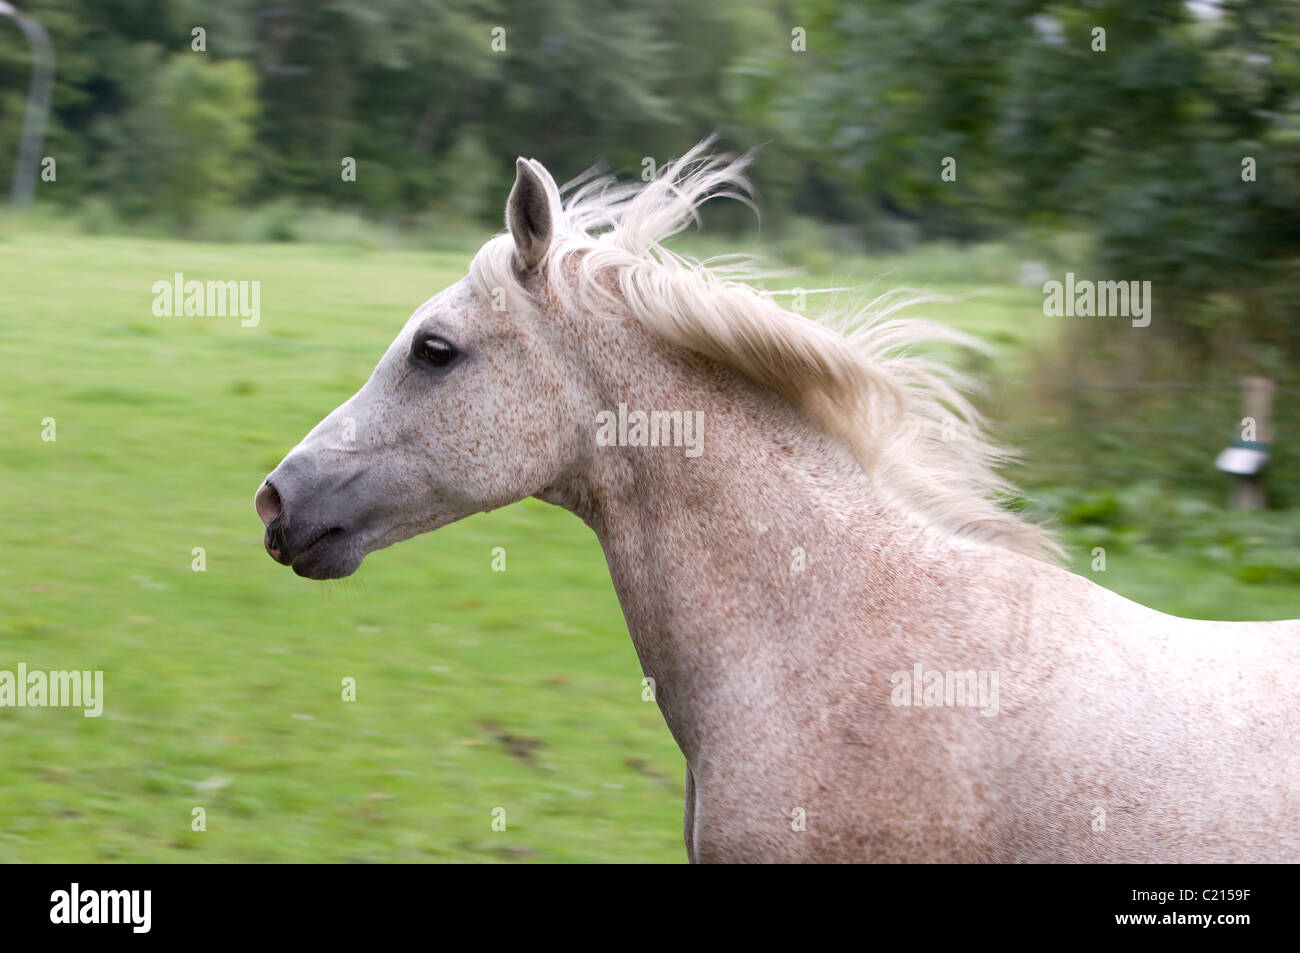 running white horse Stock Photo